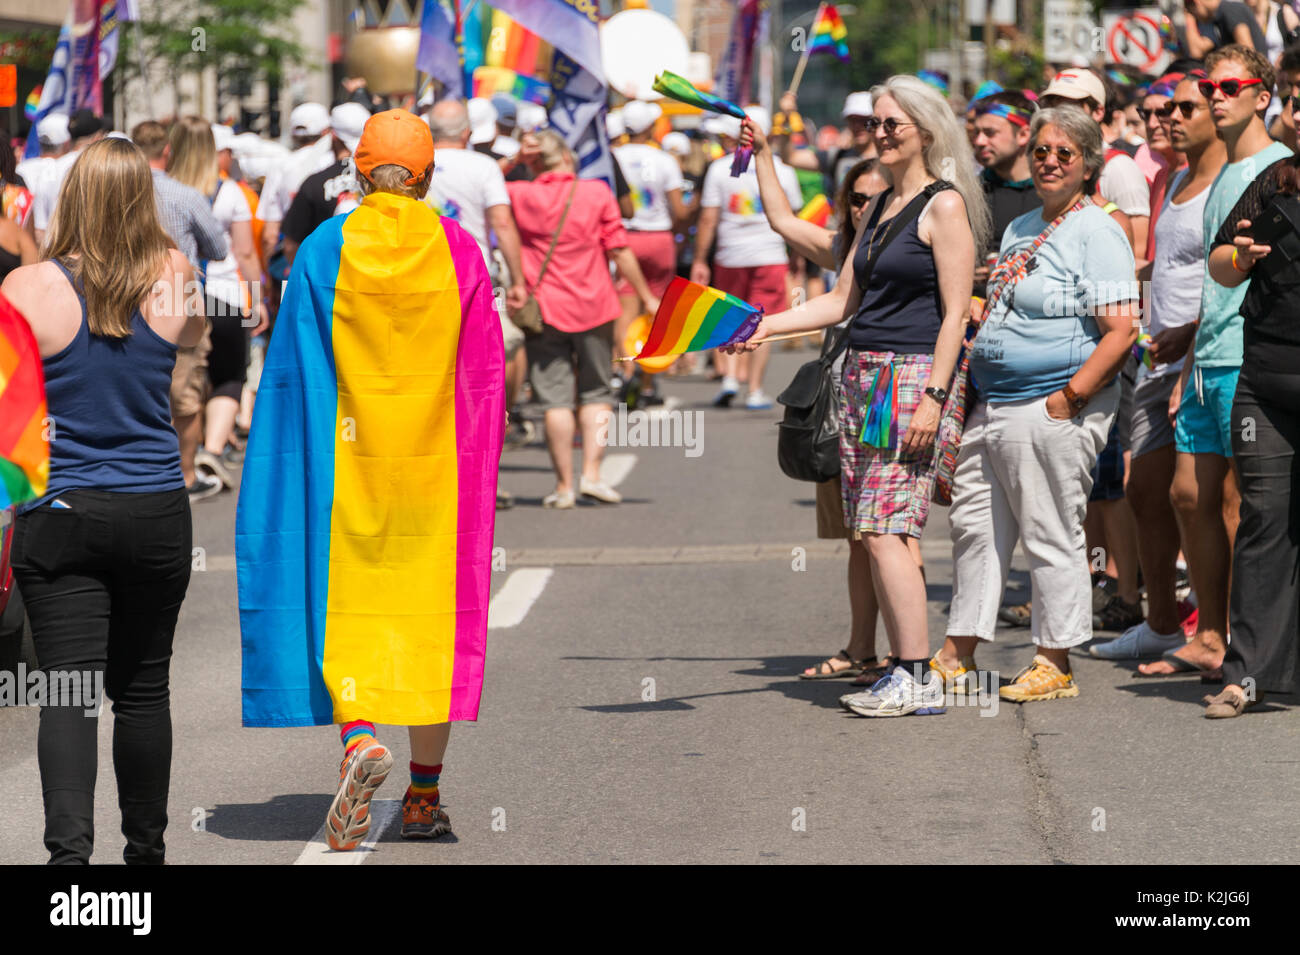 Montréal, CA - 20 août 2017 : l'homme avec pansexual drapeau sur son dos en prenant part à la parade de la Fierté gaie de Montréal. Banque D'Images